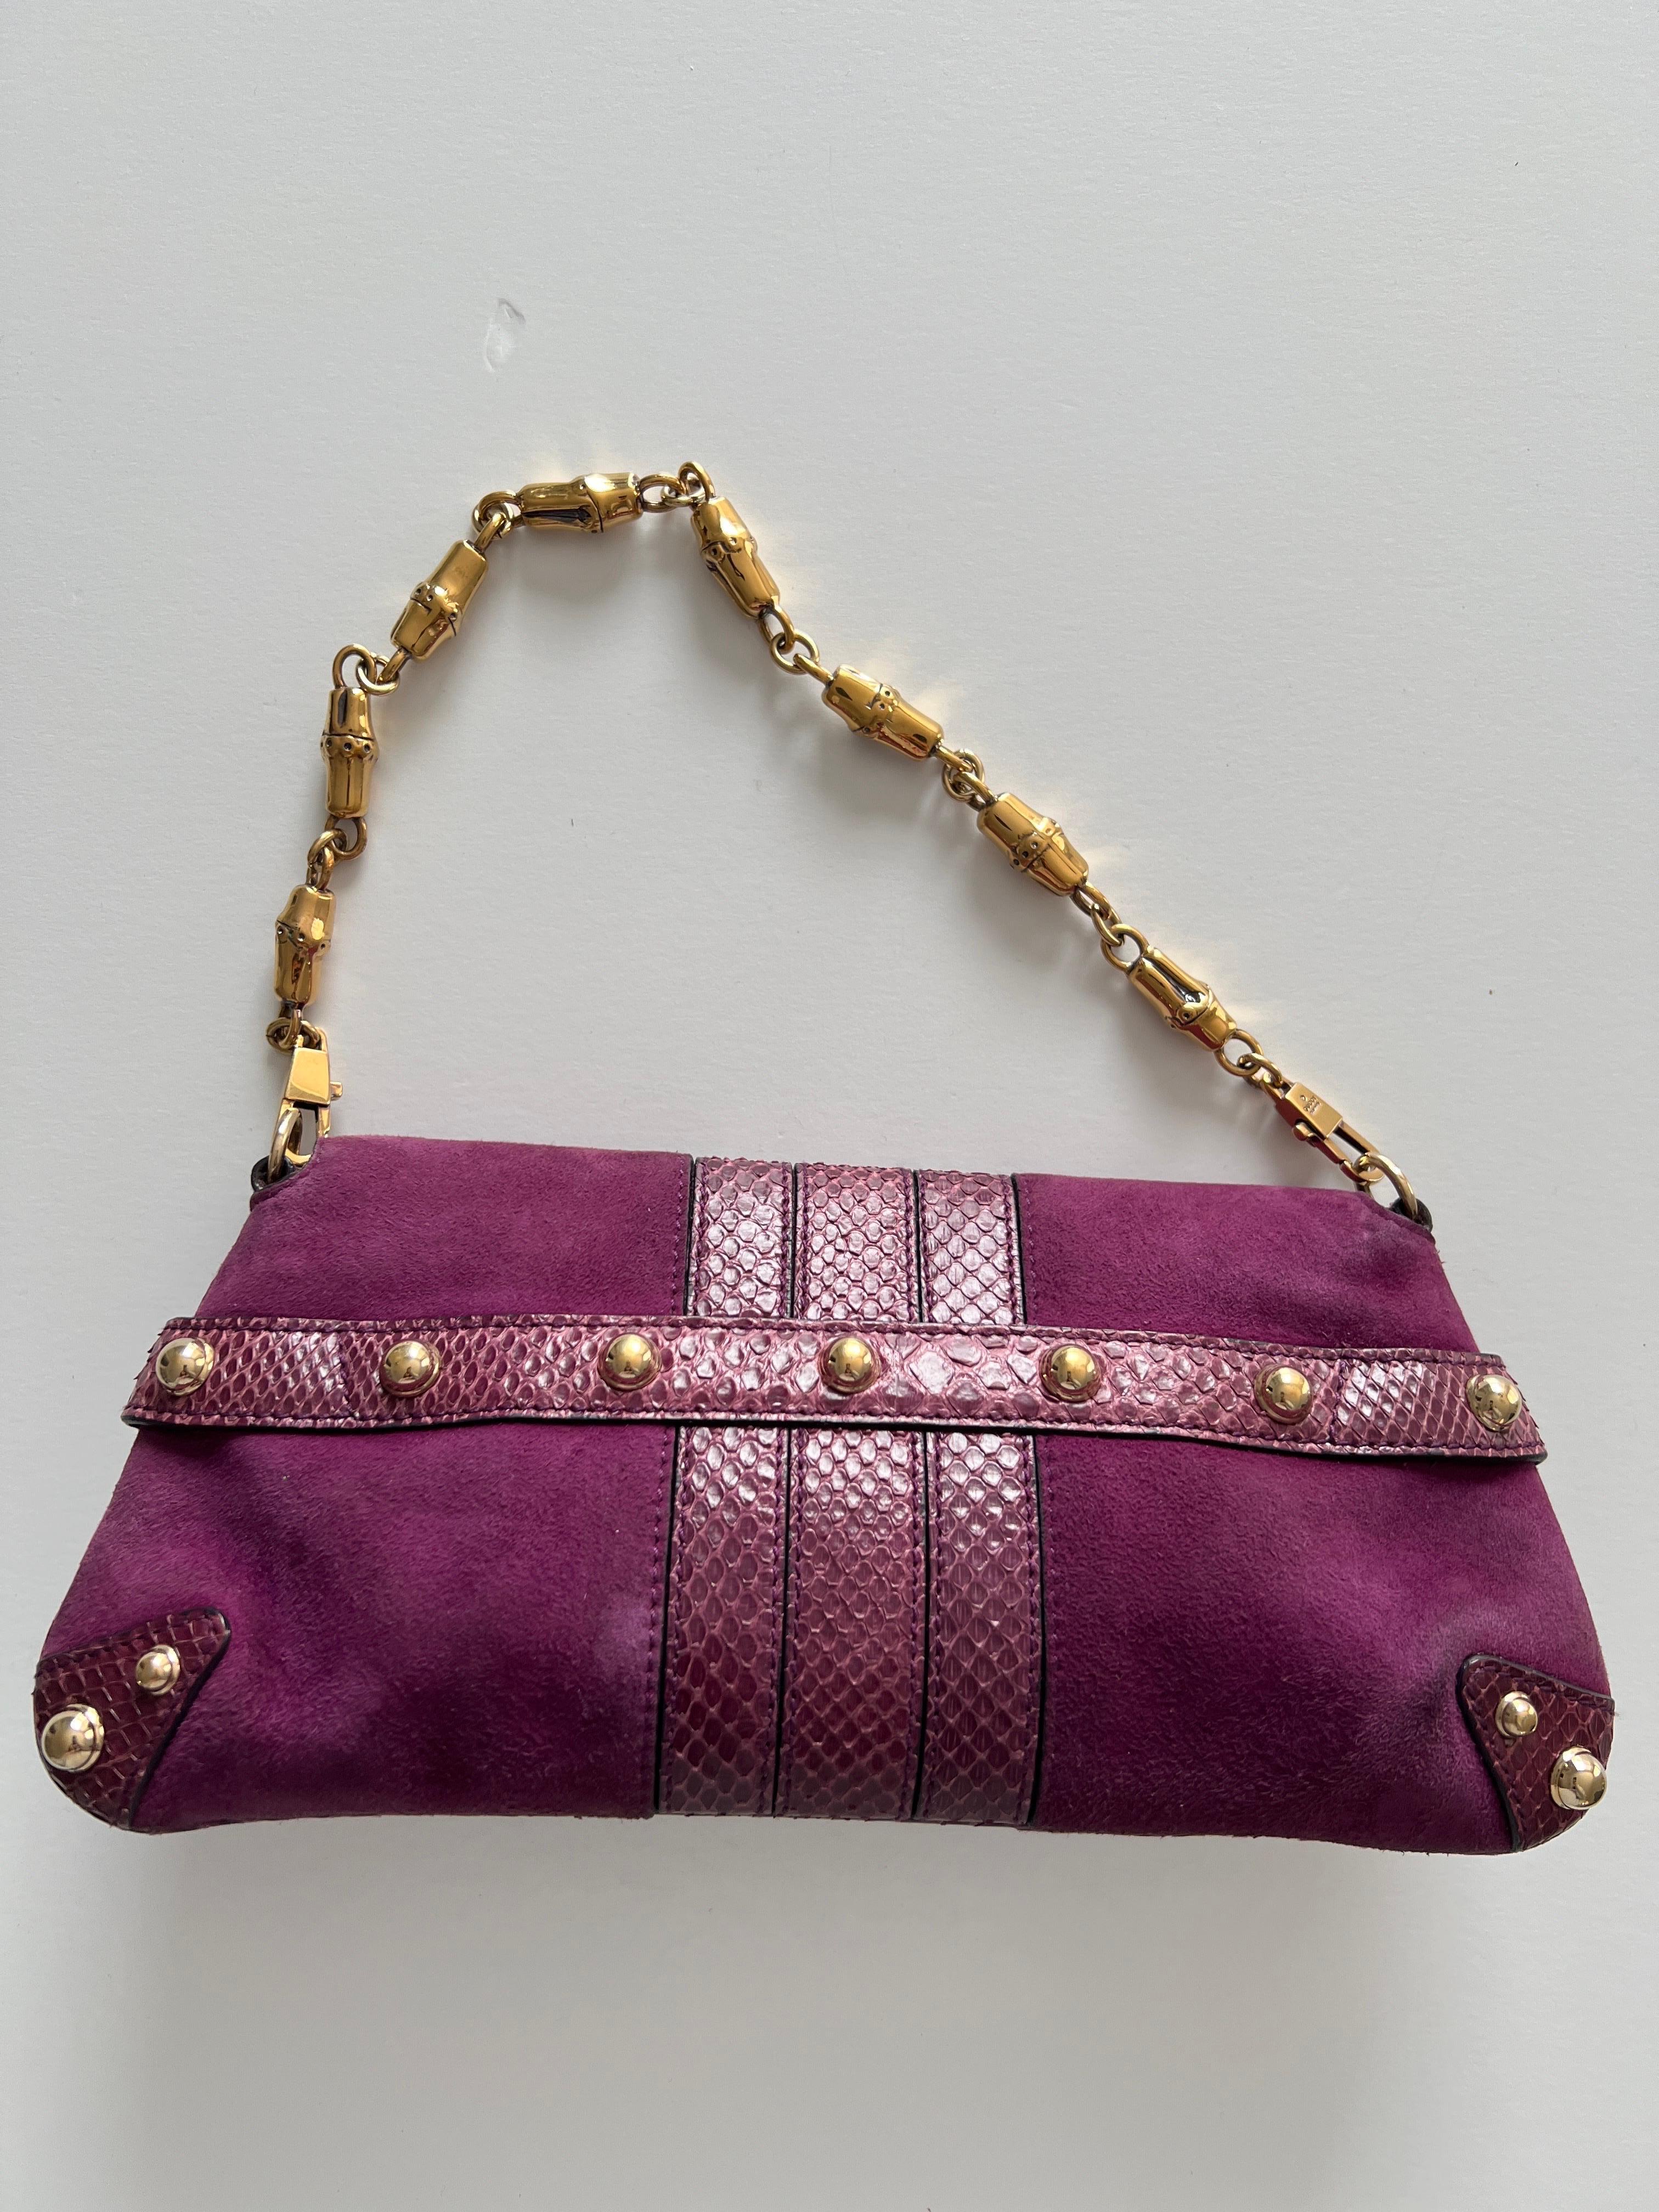 Cet adorable sac à chaîne en daim violet et peau de serpent de Gucci présente un magnifique daim violet avec des bordures en peau de serpent. Le sac est doté d'un émail violet et d'une bandoulière en chaîne dorée. Il constitue un sac de soirée